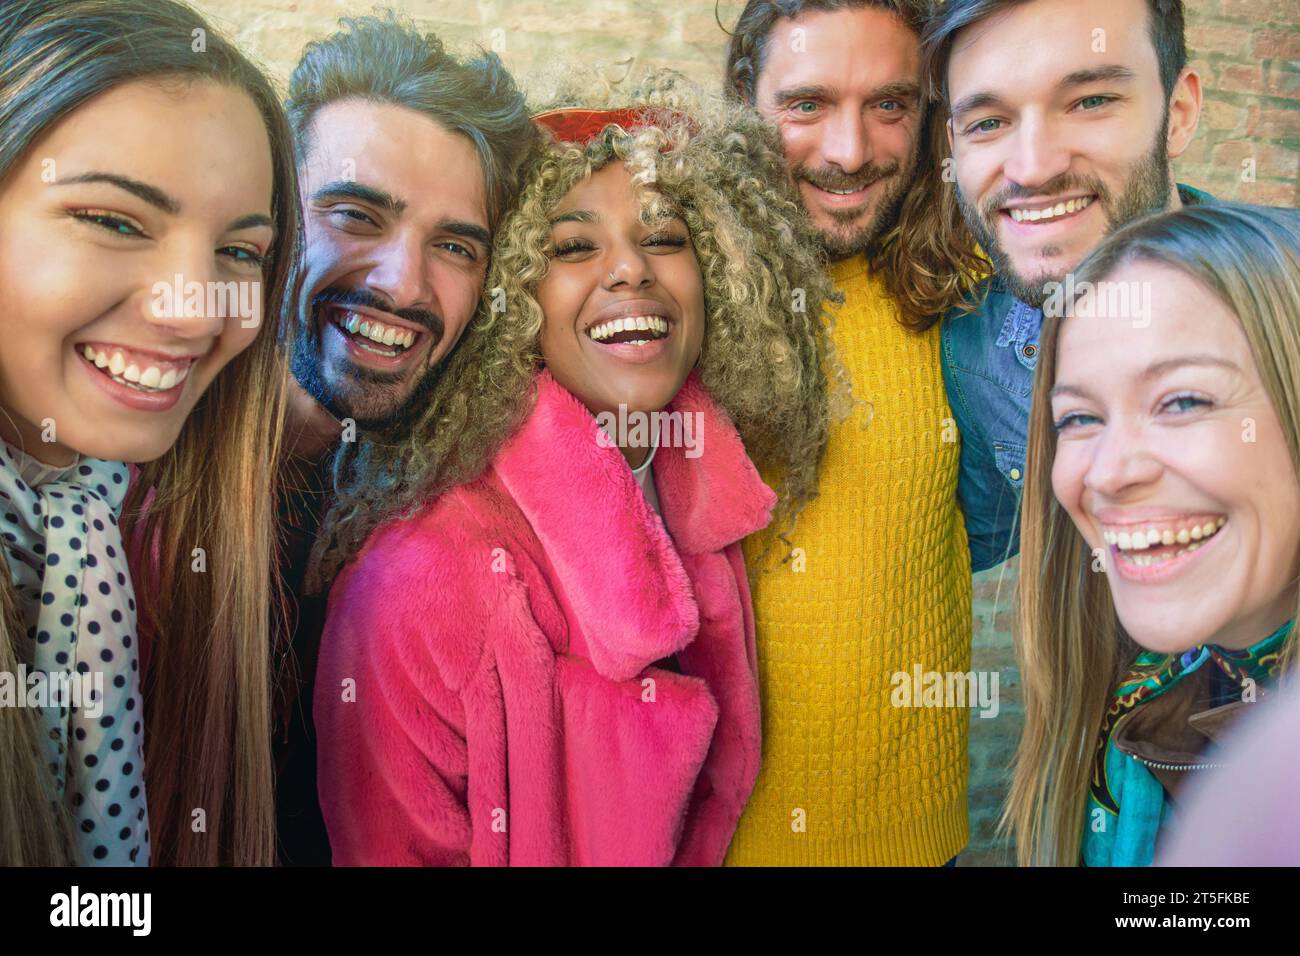 Eine bunte Gruppe von Freunden lacht und macht ein Selfie, die Freude und Freundschaft auf einer städtischen Straße ausstrahlen. Stockfoto